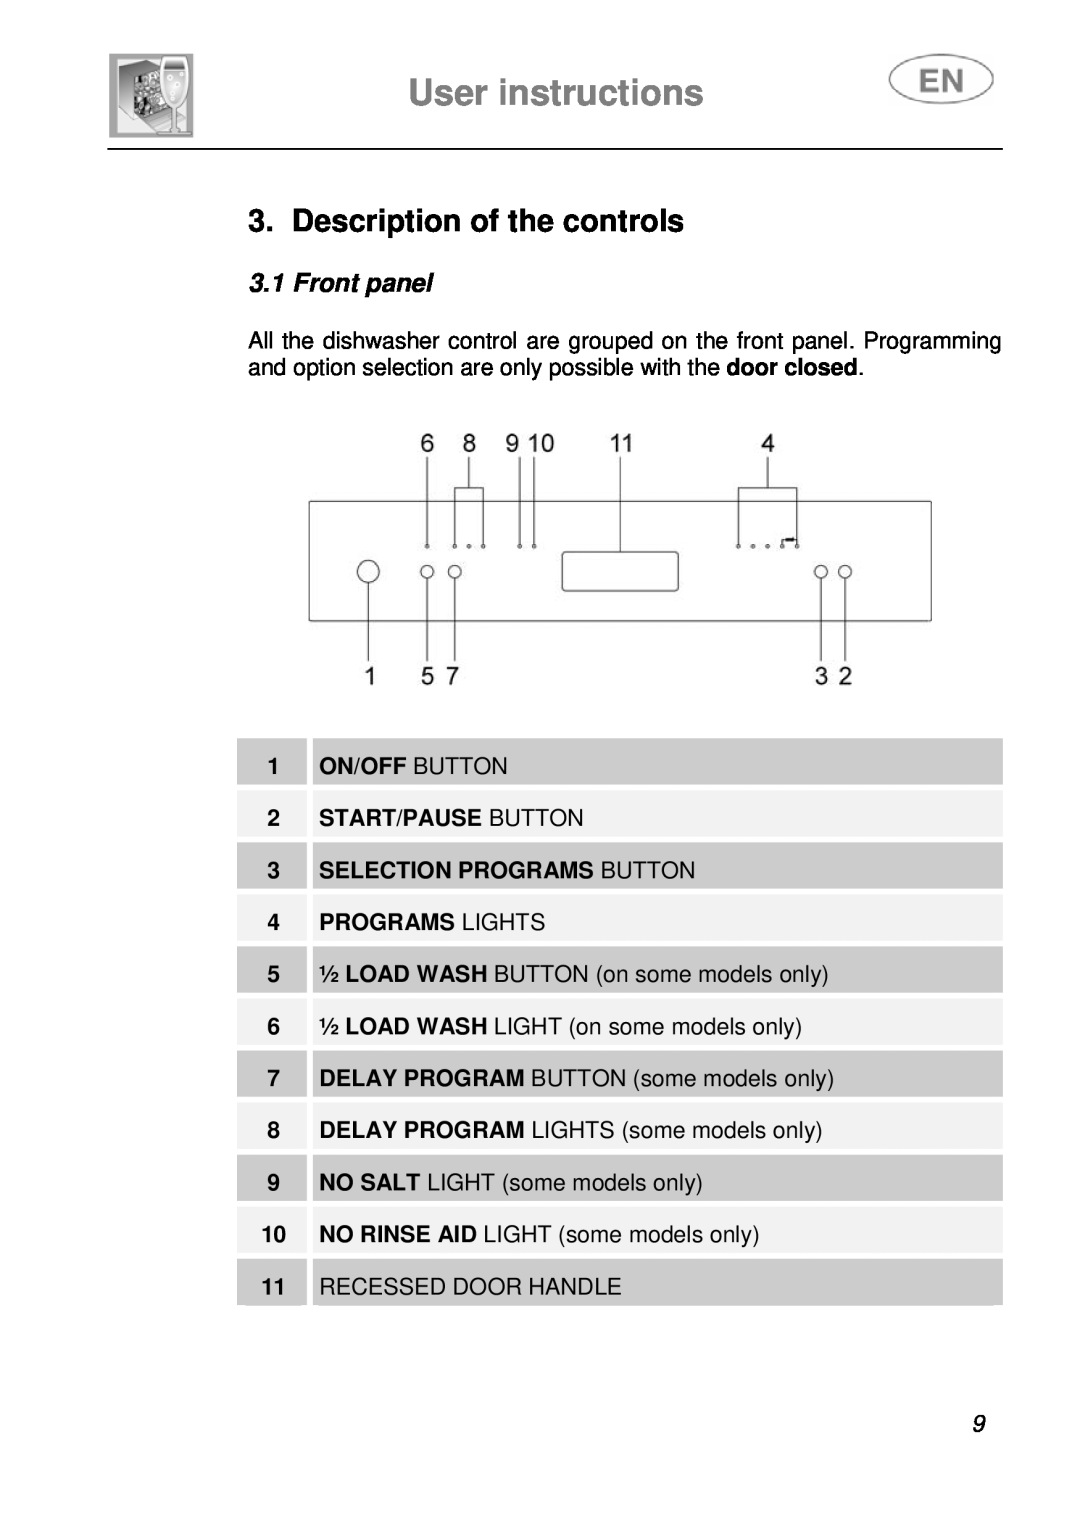 Smeg PL115NE, PL115X instruction manual User instructions, Description of the controls, Front panel, Programs Lights 